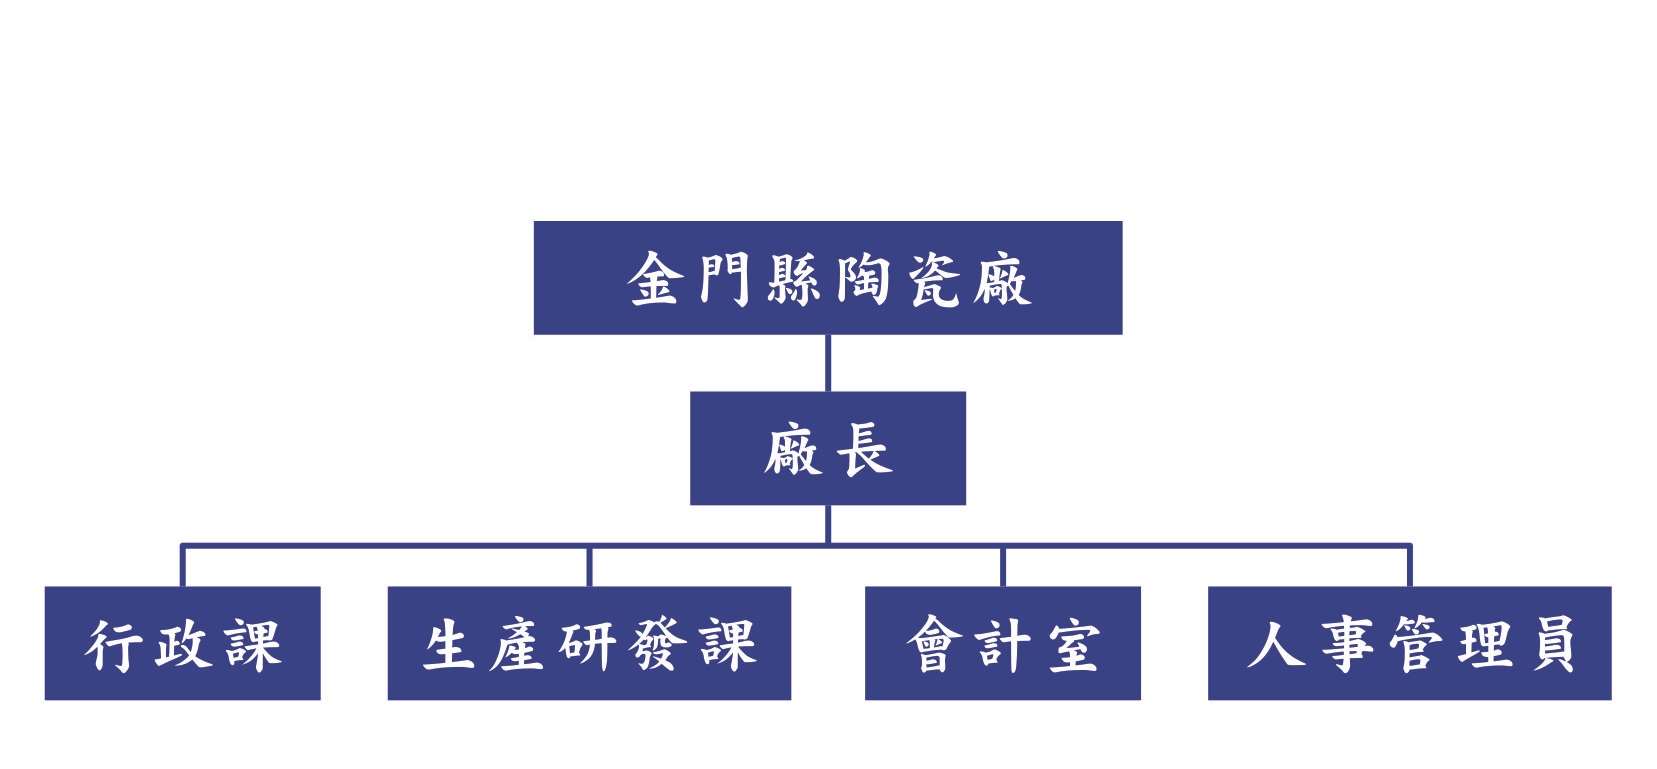 組織架構圖，詳細請見下方表格介紹